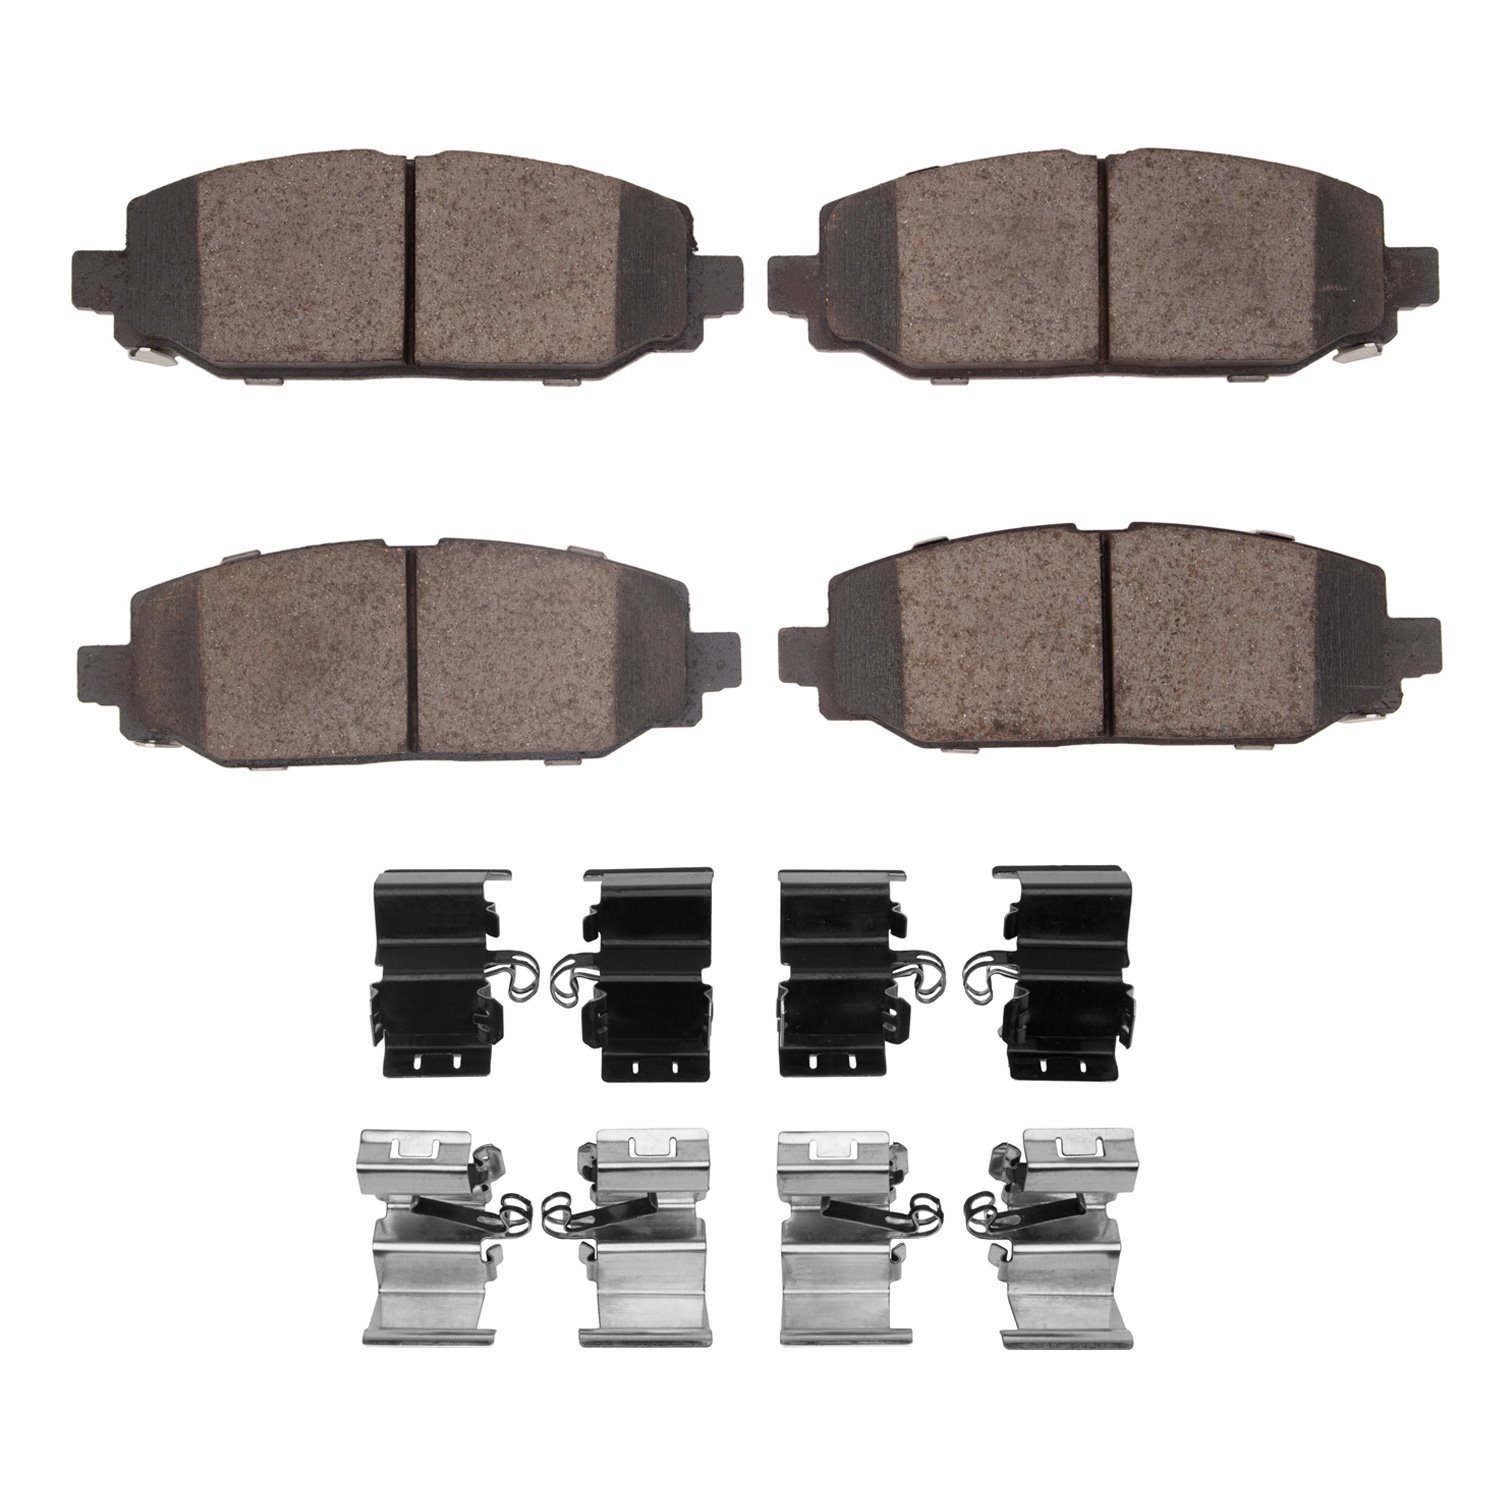 3000-Series CeMoparic Brake Pads & Hardware Kit, Fits